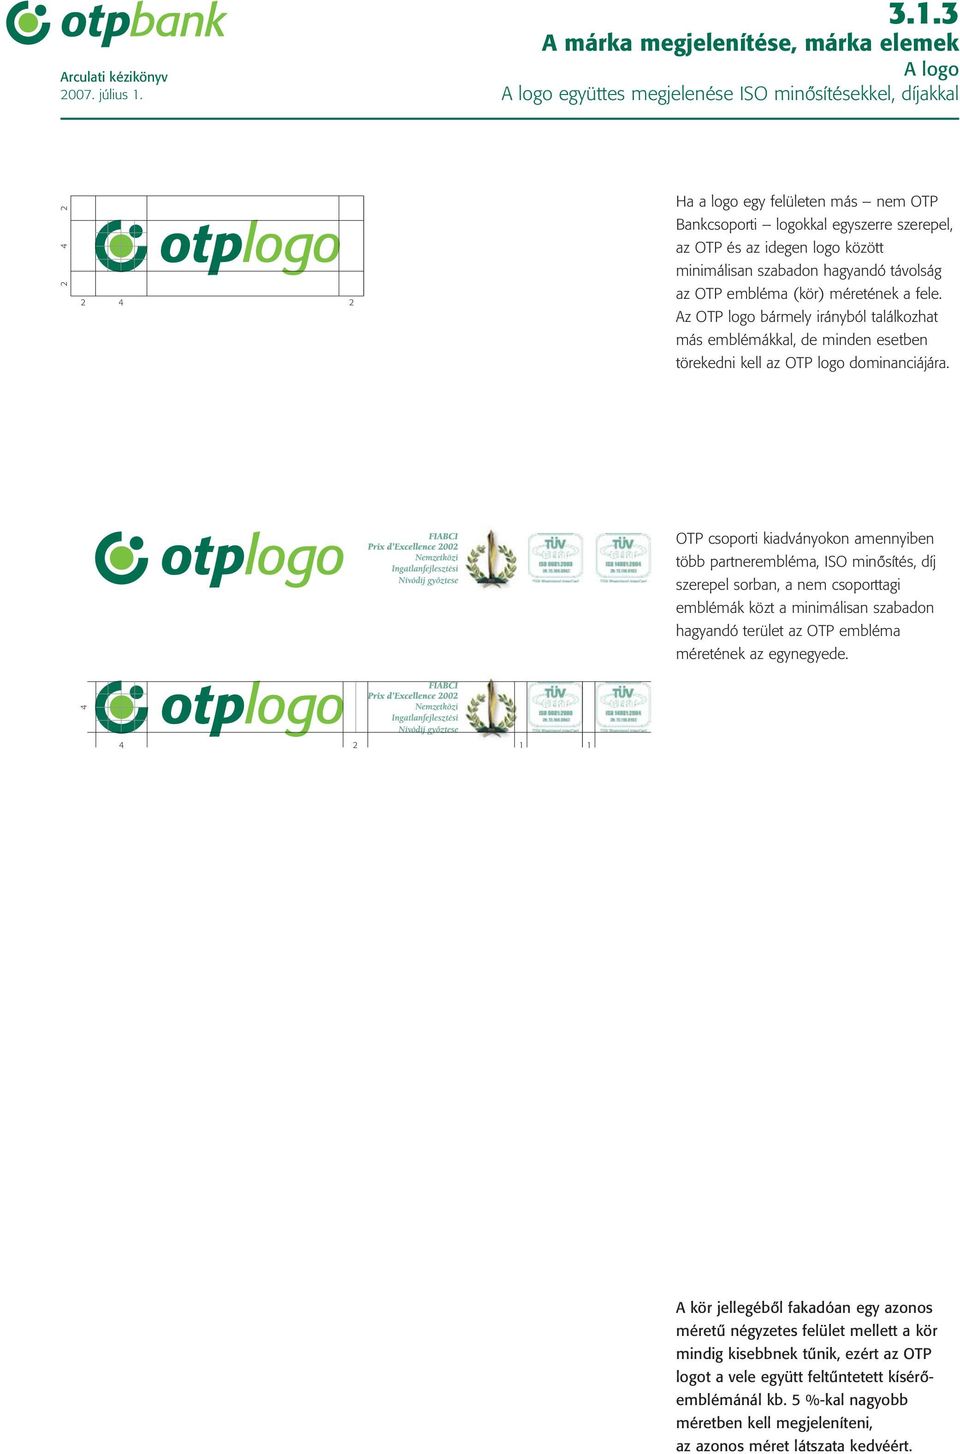 hagyandó távolság az OTP embléma (kör) méretének a fele. Az OTP logo bármely irányból találkozhat más emblémákkal, de minden esetben törekedni kell az OTP logo dominanciájára.